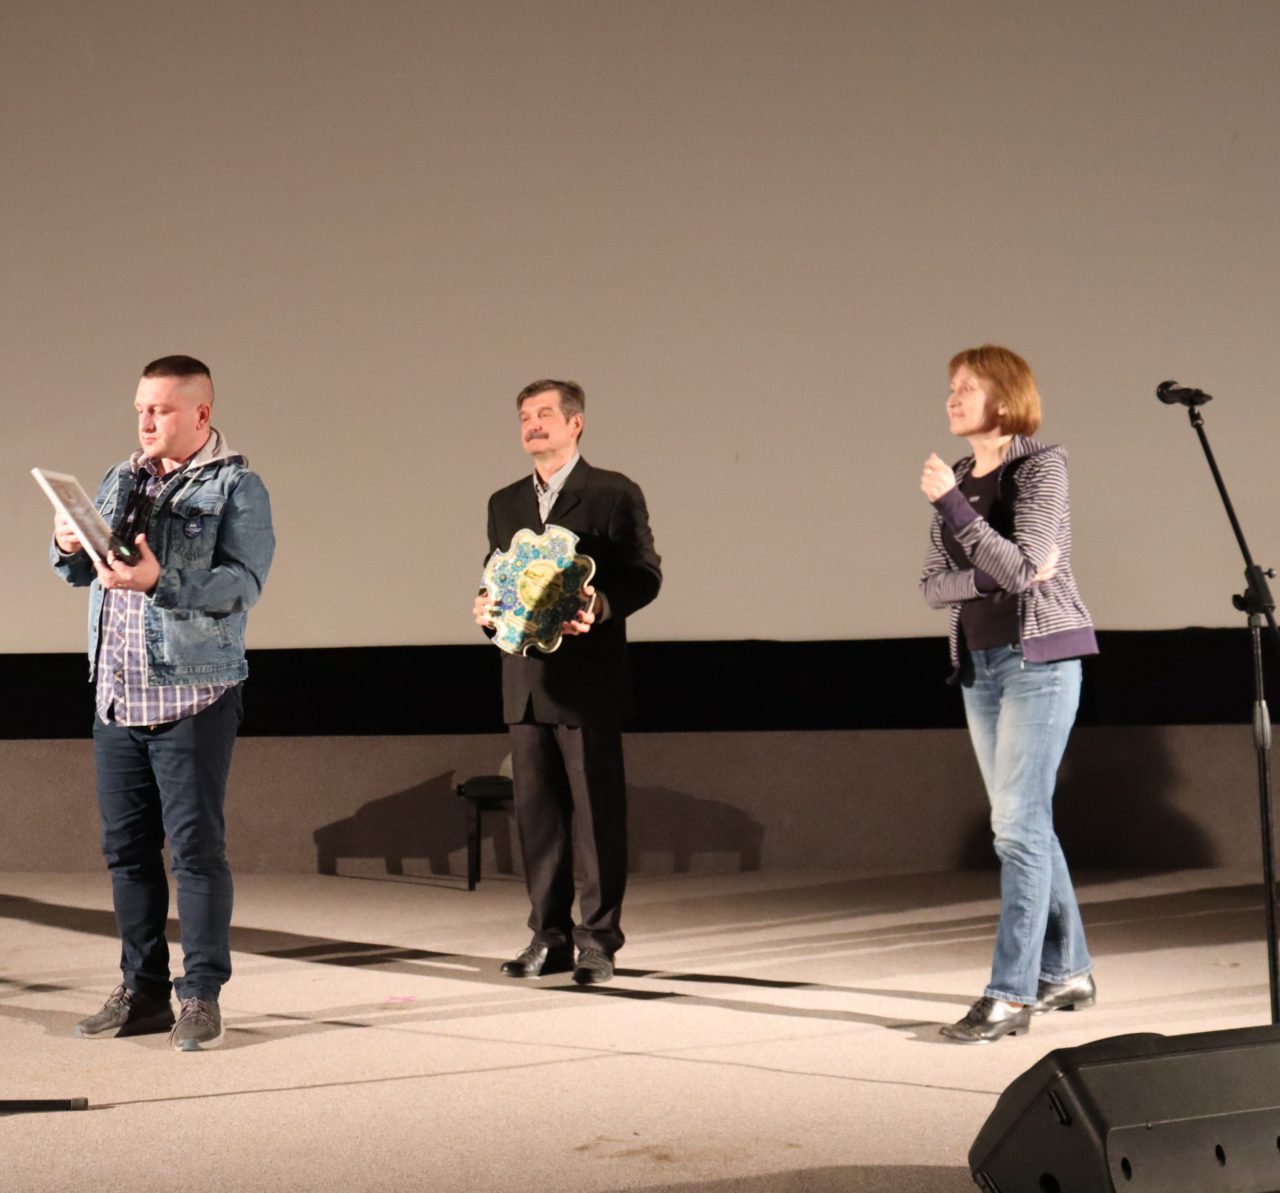 Ассоциация документального кино провела творческий вечер кинорежиссера Александра Куприна